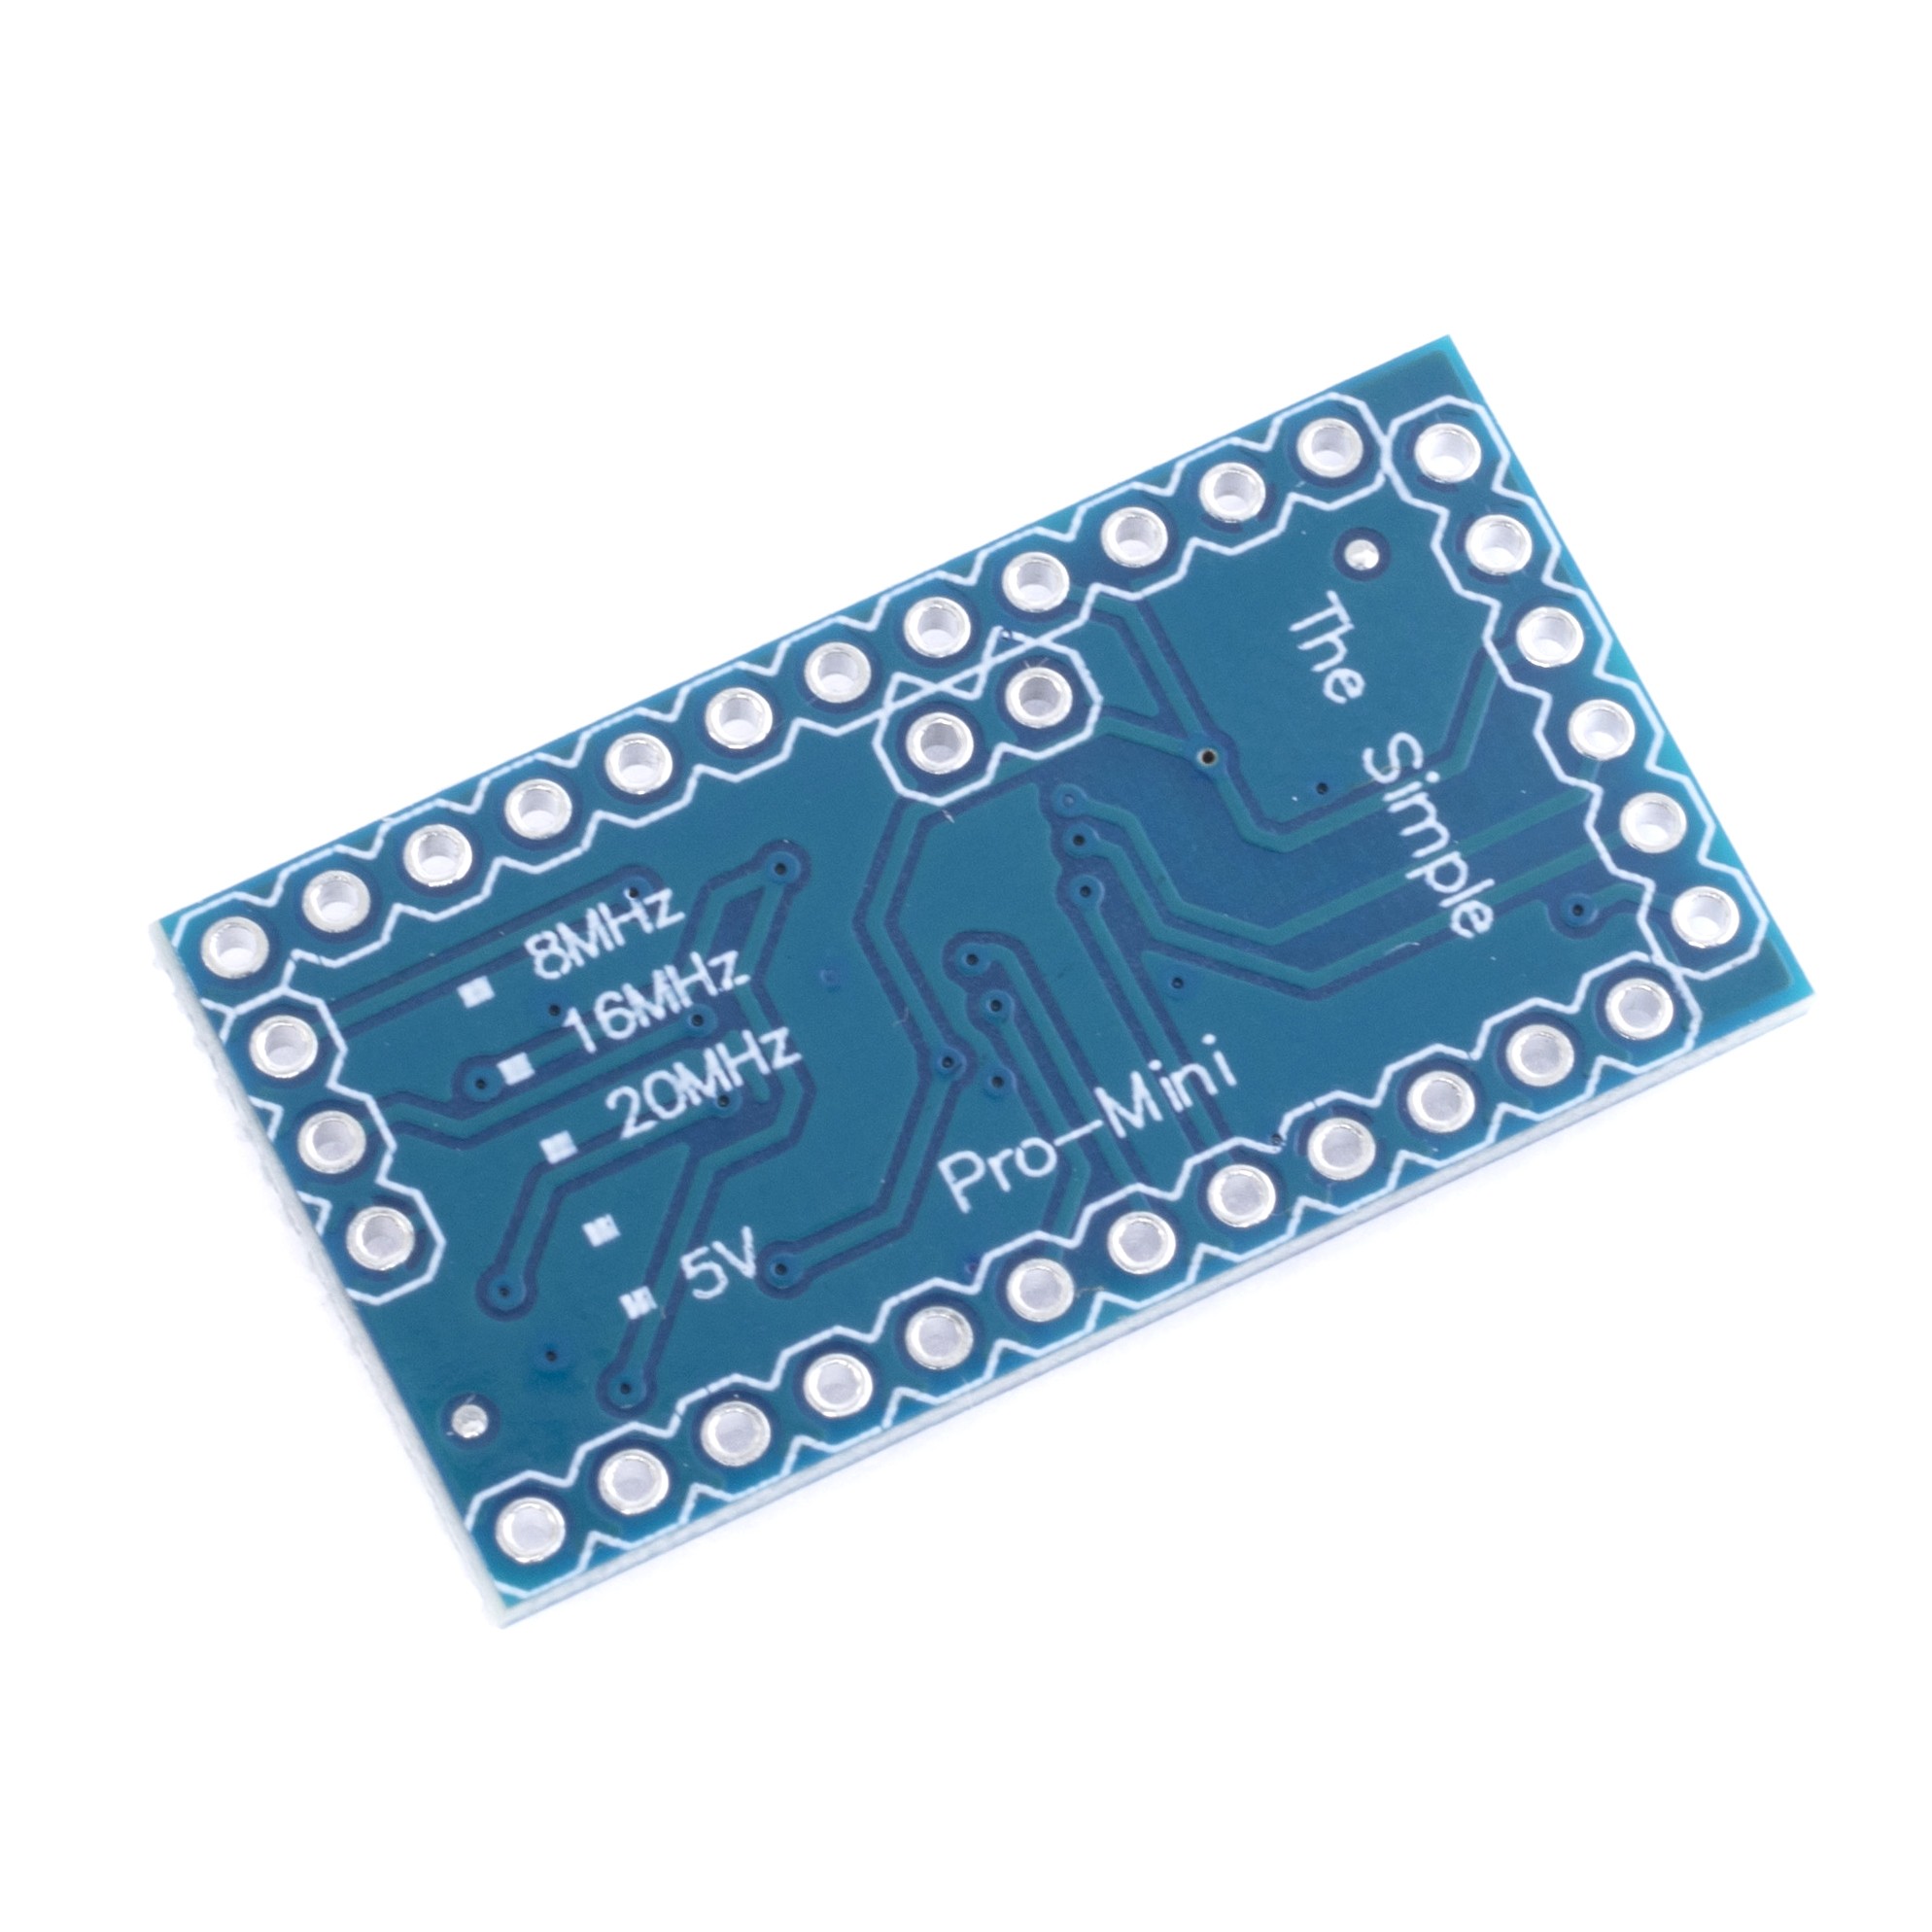 Pro Mini Module Atmega328 5V 16M For Arduino Compatible With Nano